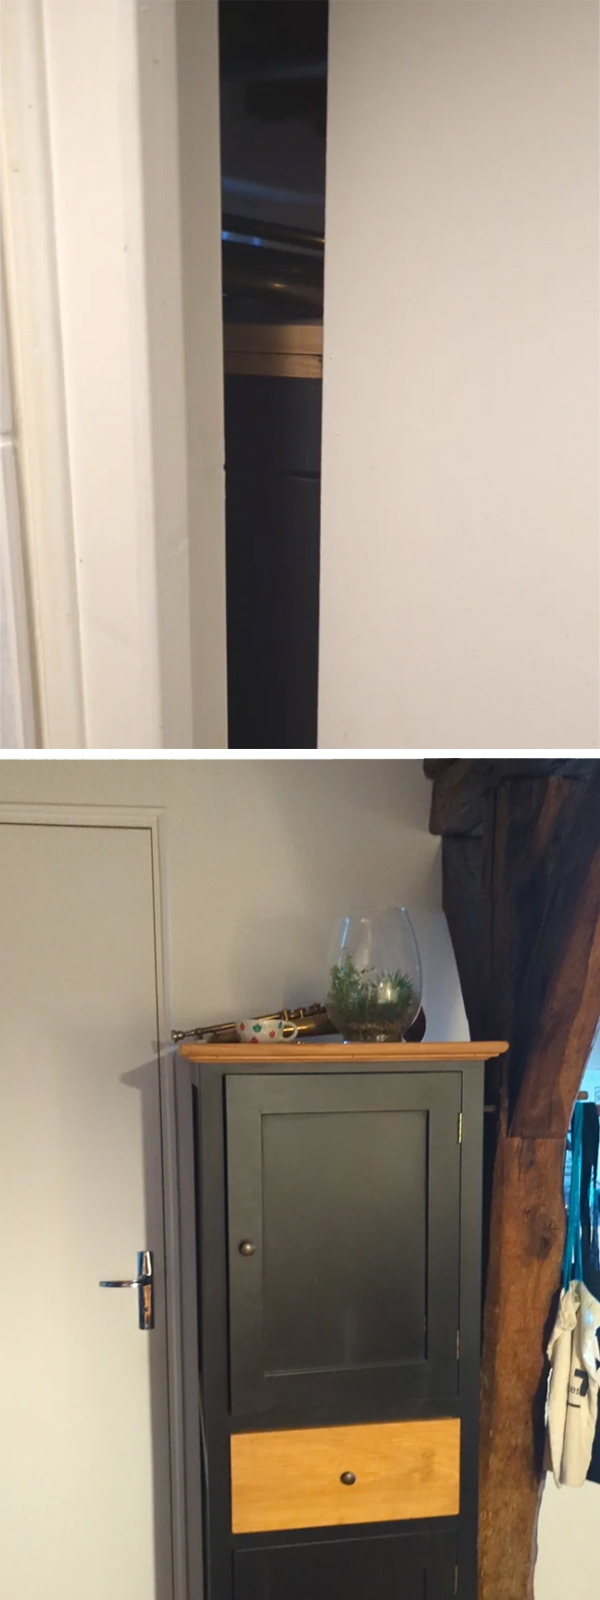 A shelf next to a door